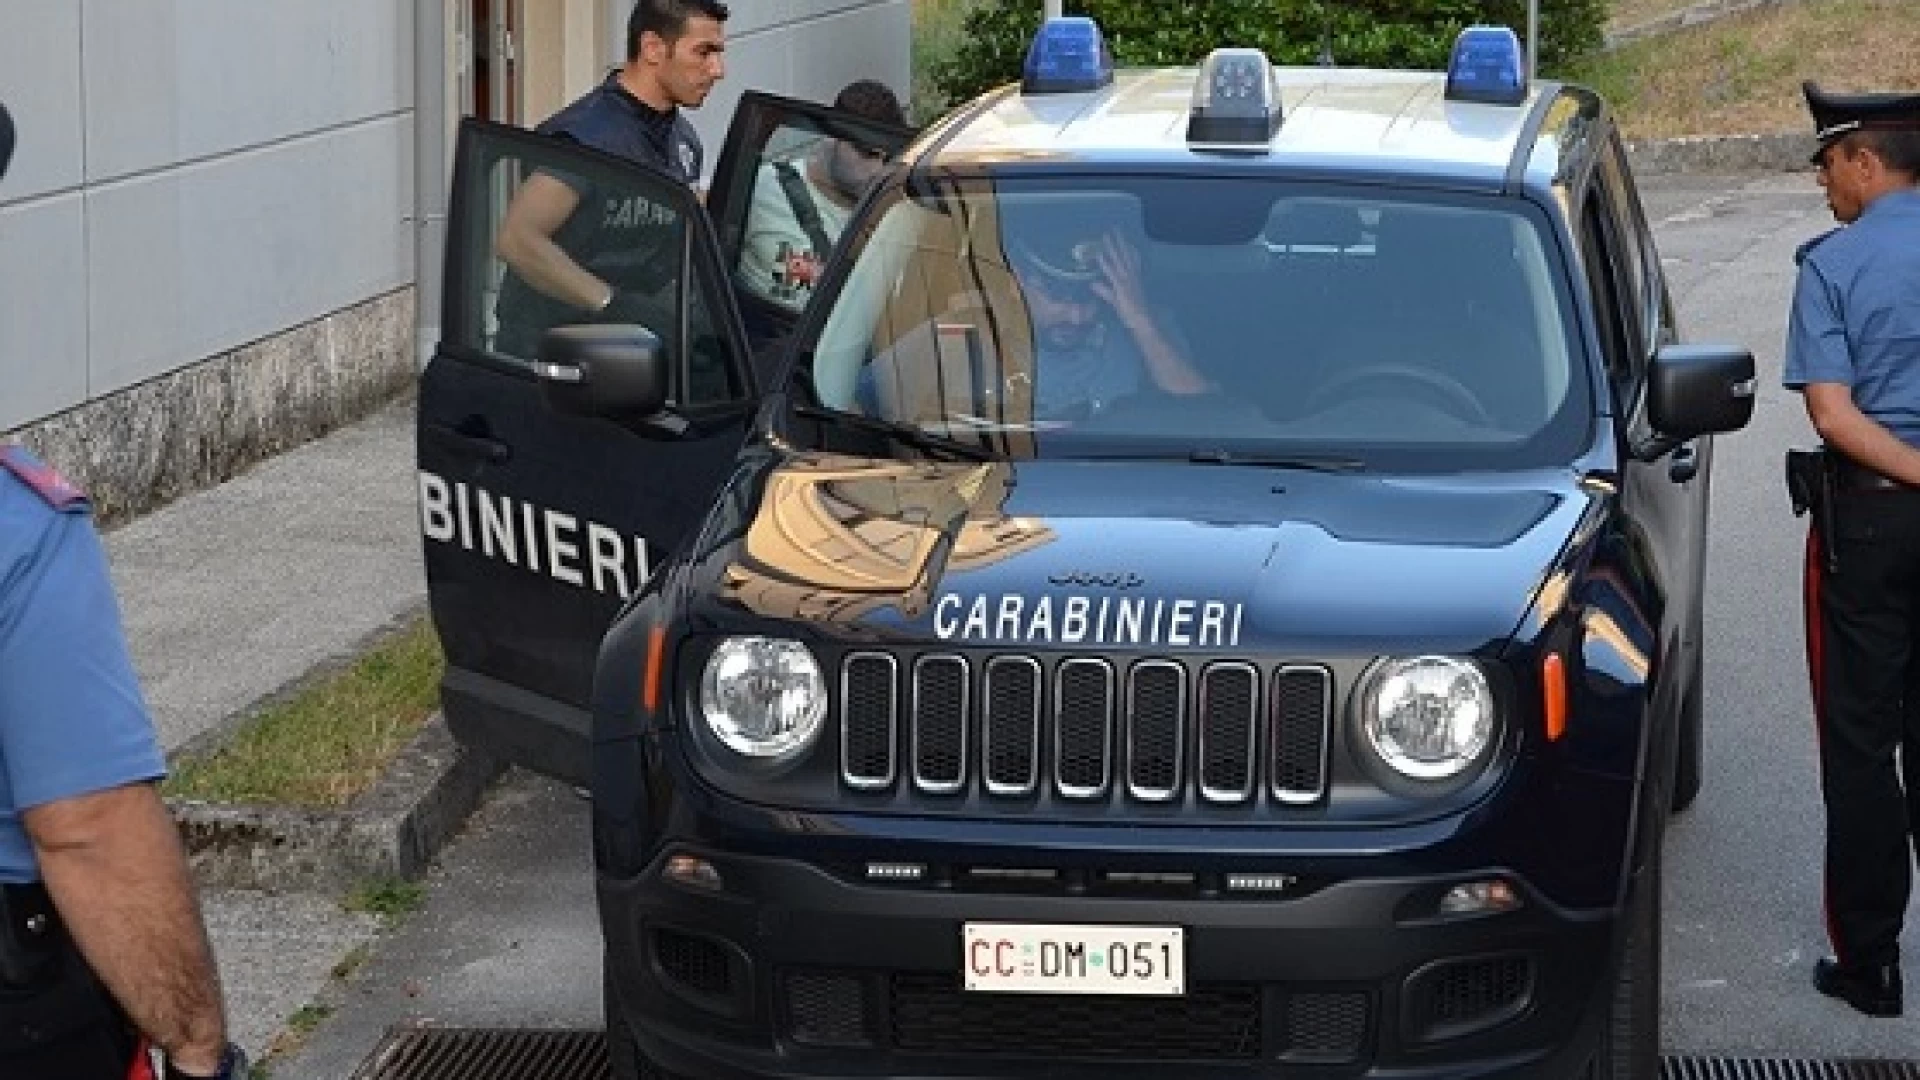 Isernia: i Carabinieri arrestano tre spacciatori. Fornivano droga a studenti, procurata anche in occasione di gita scolastica in Olanda.